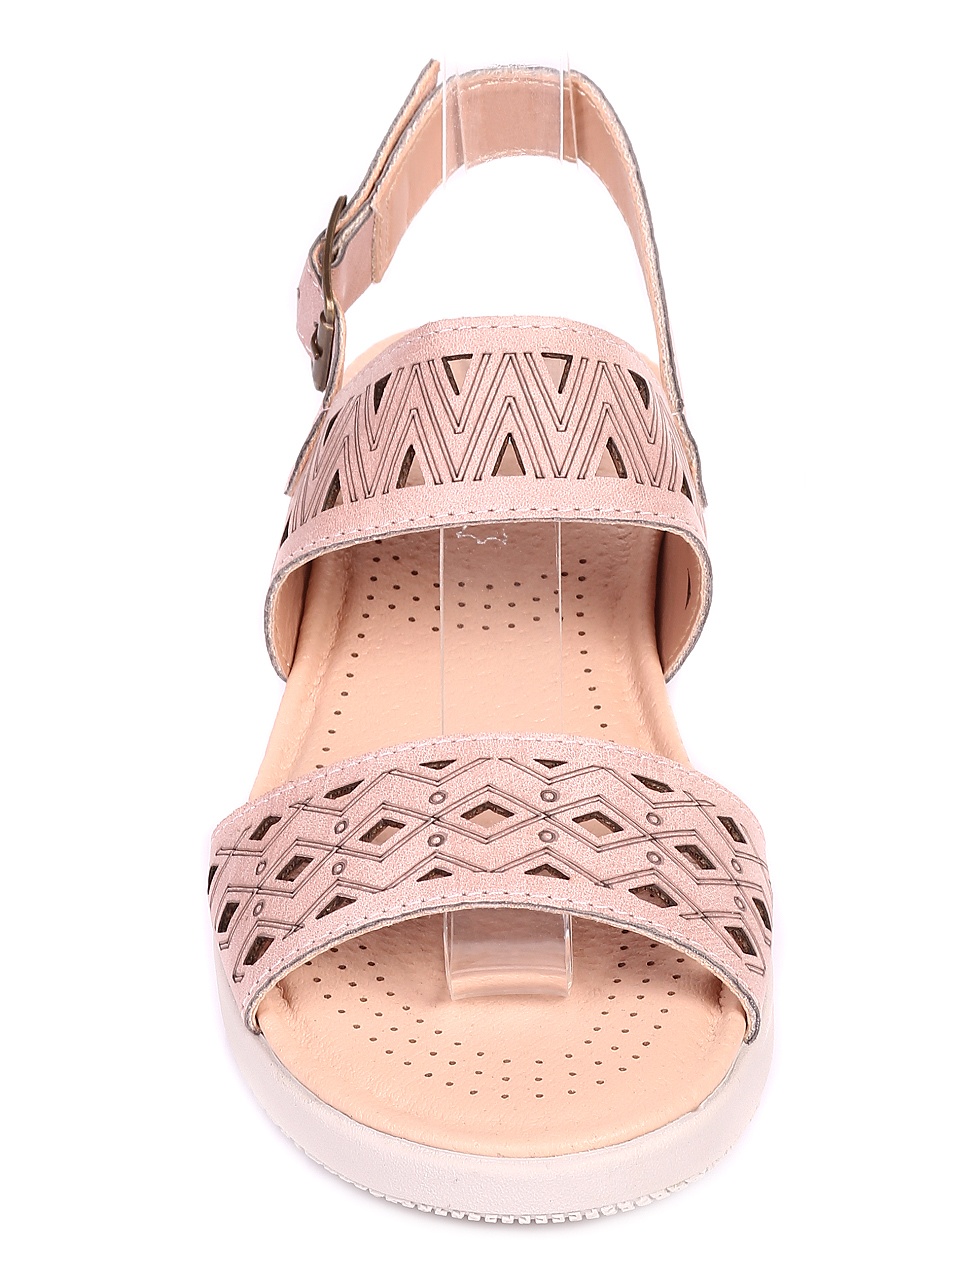 Ежедневни дамски комфортни сандали в розово 4C-20162 pink